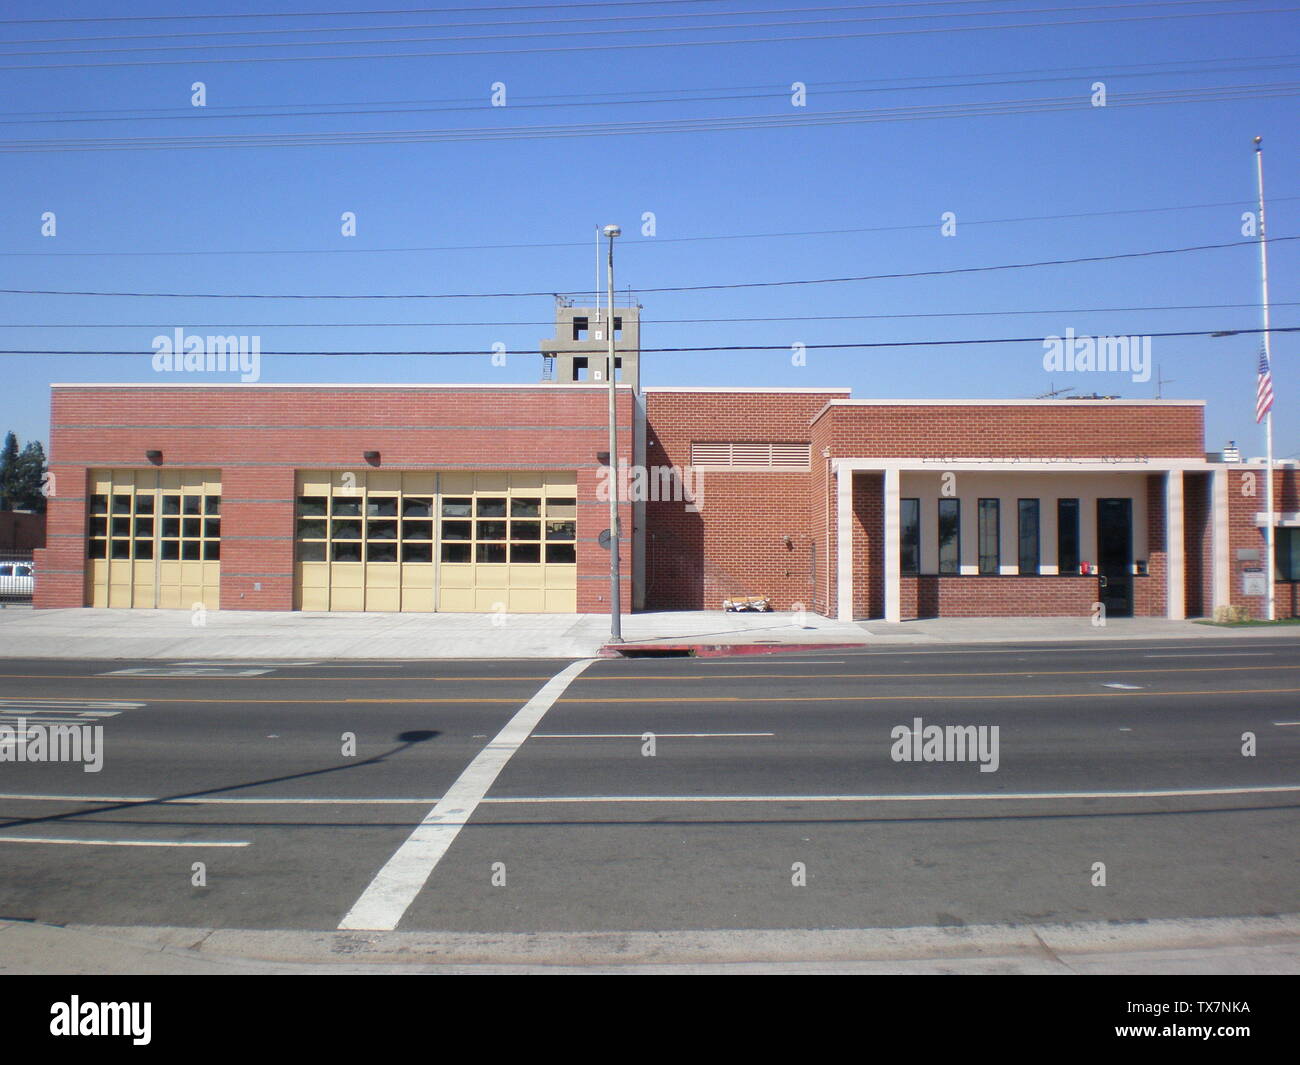 Estación de Bomberos # 89 en el área de North Hollywood en los Angeles, Ca; 9/11/10; I (Manafan5 (Talk)) creó este trabajo completamente por mí mismo.; Manafan5 (Talk); Foto de stock